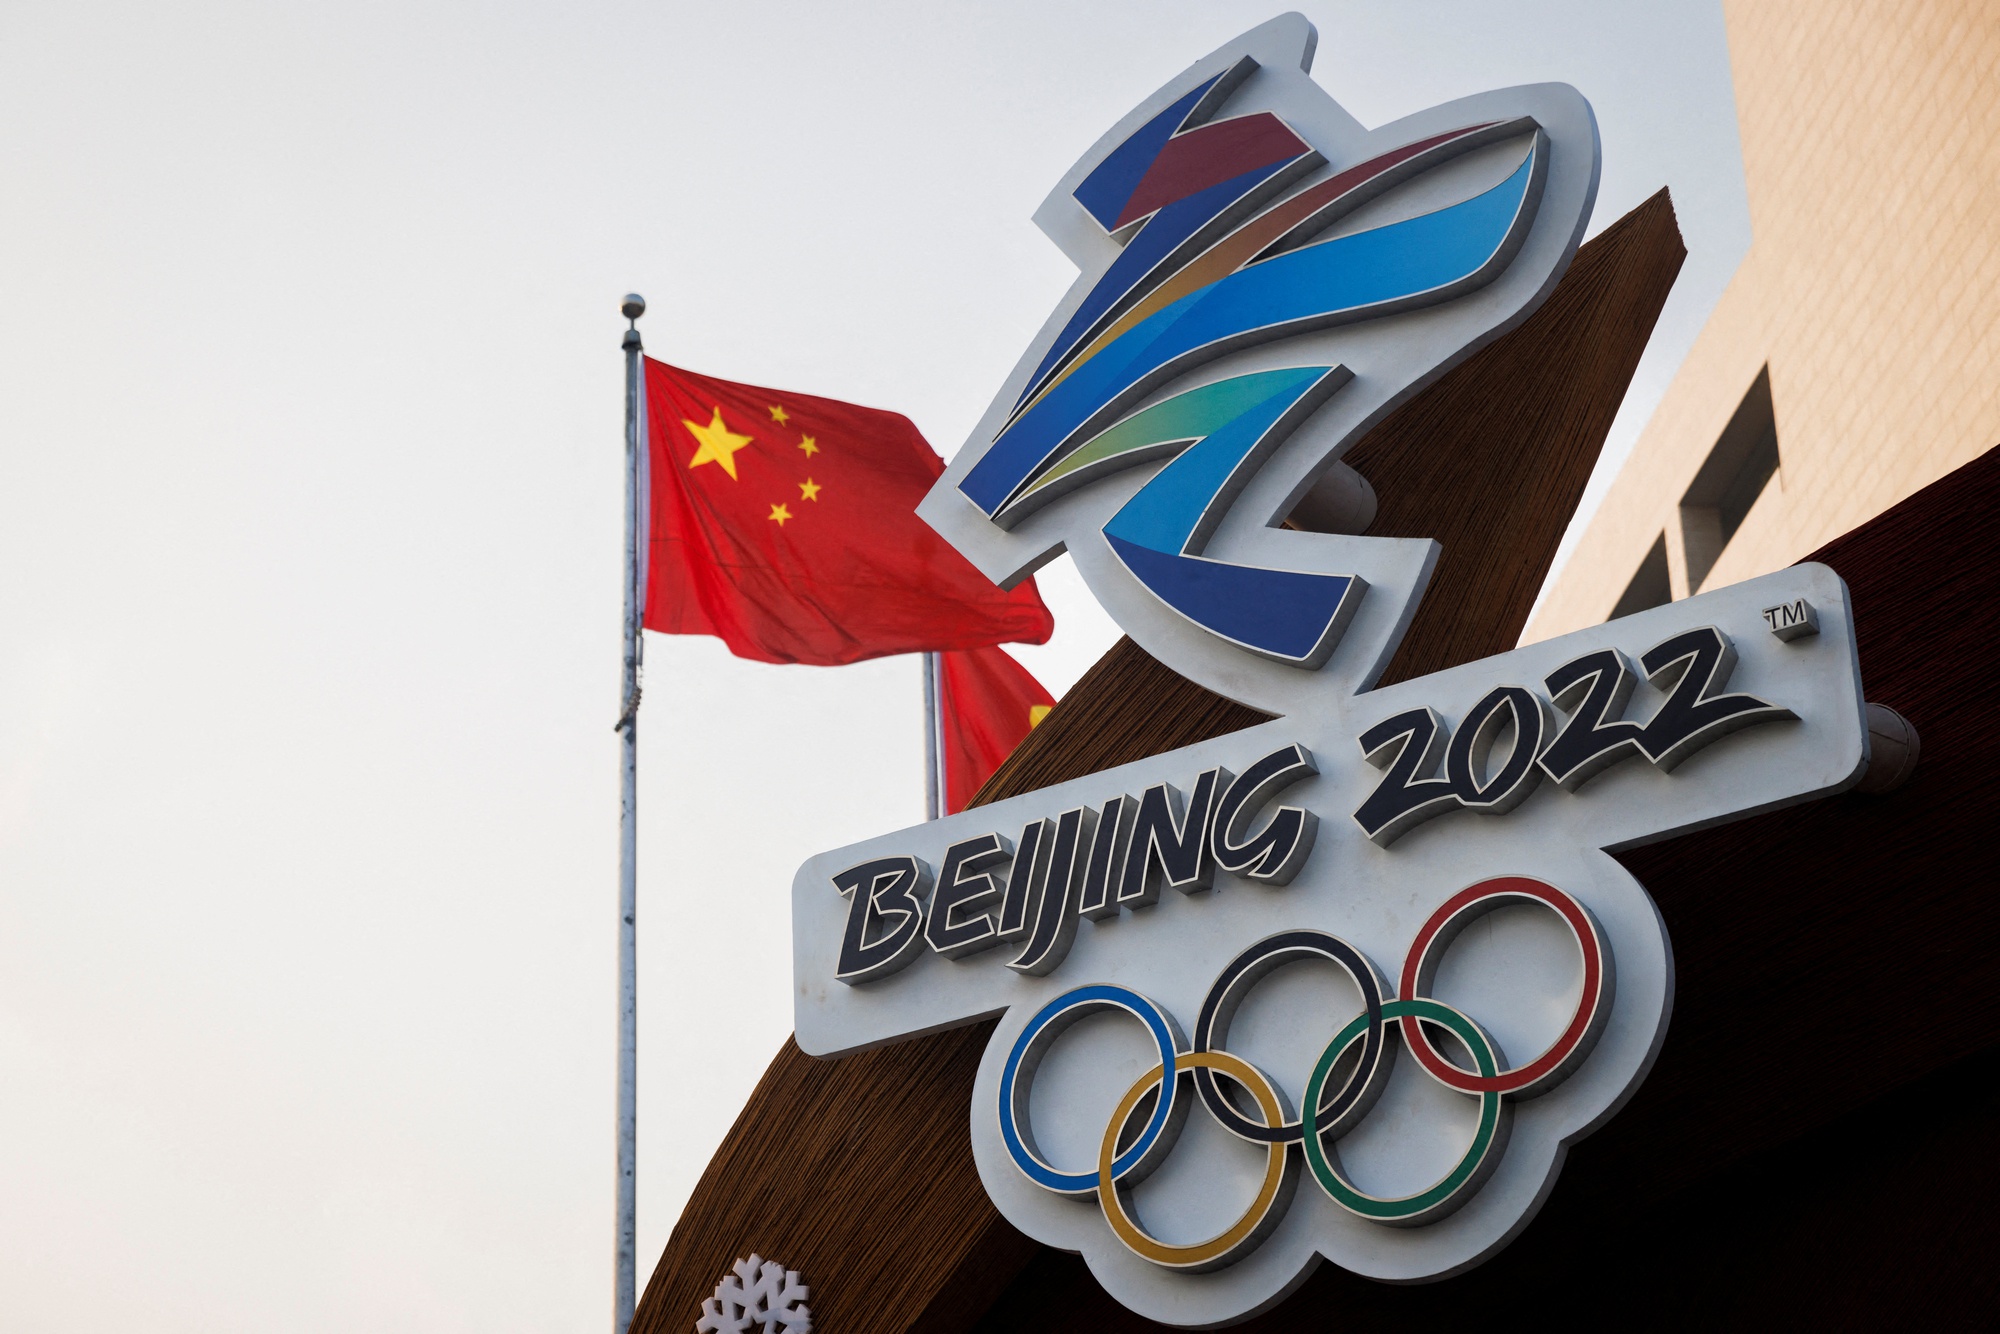 Olympic Paris 2024 trở nên xa xỉ khi 'ông trùm' đồ hiệu LVMH tài trợ - Ảnh 1.